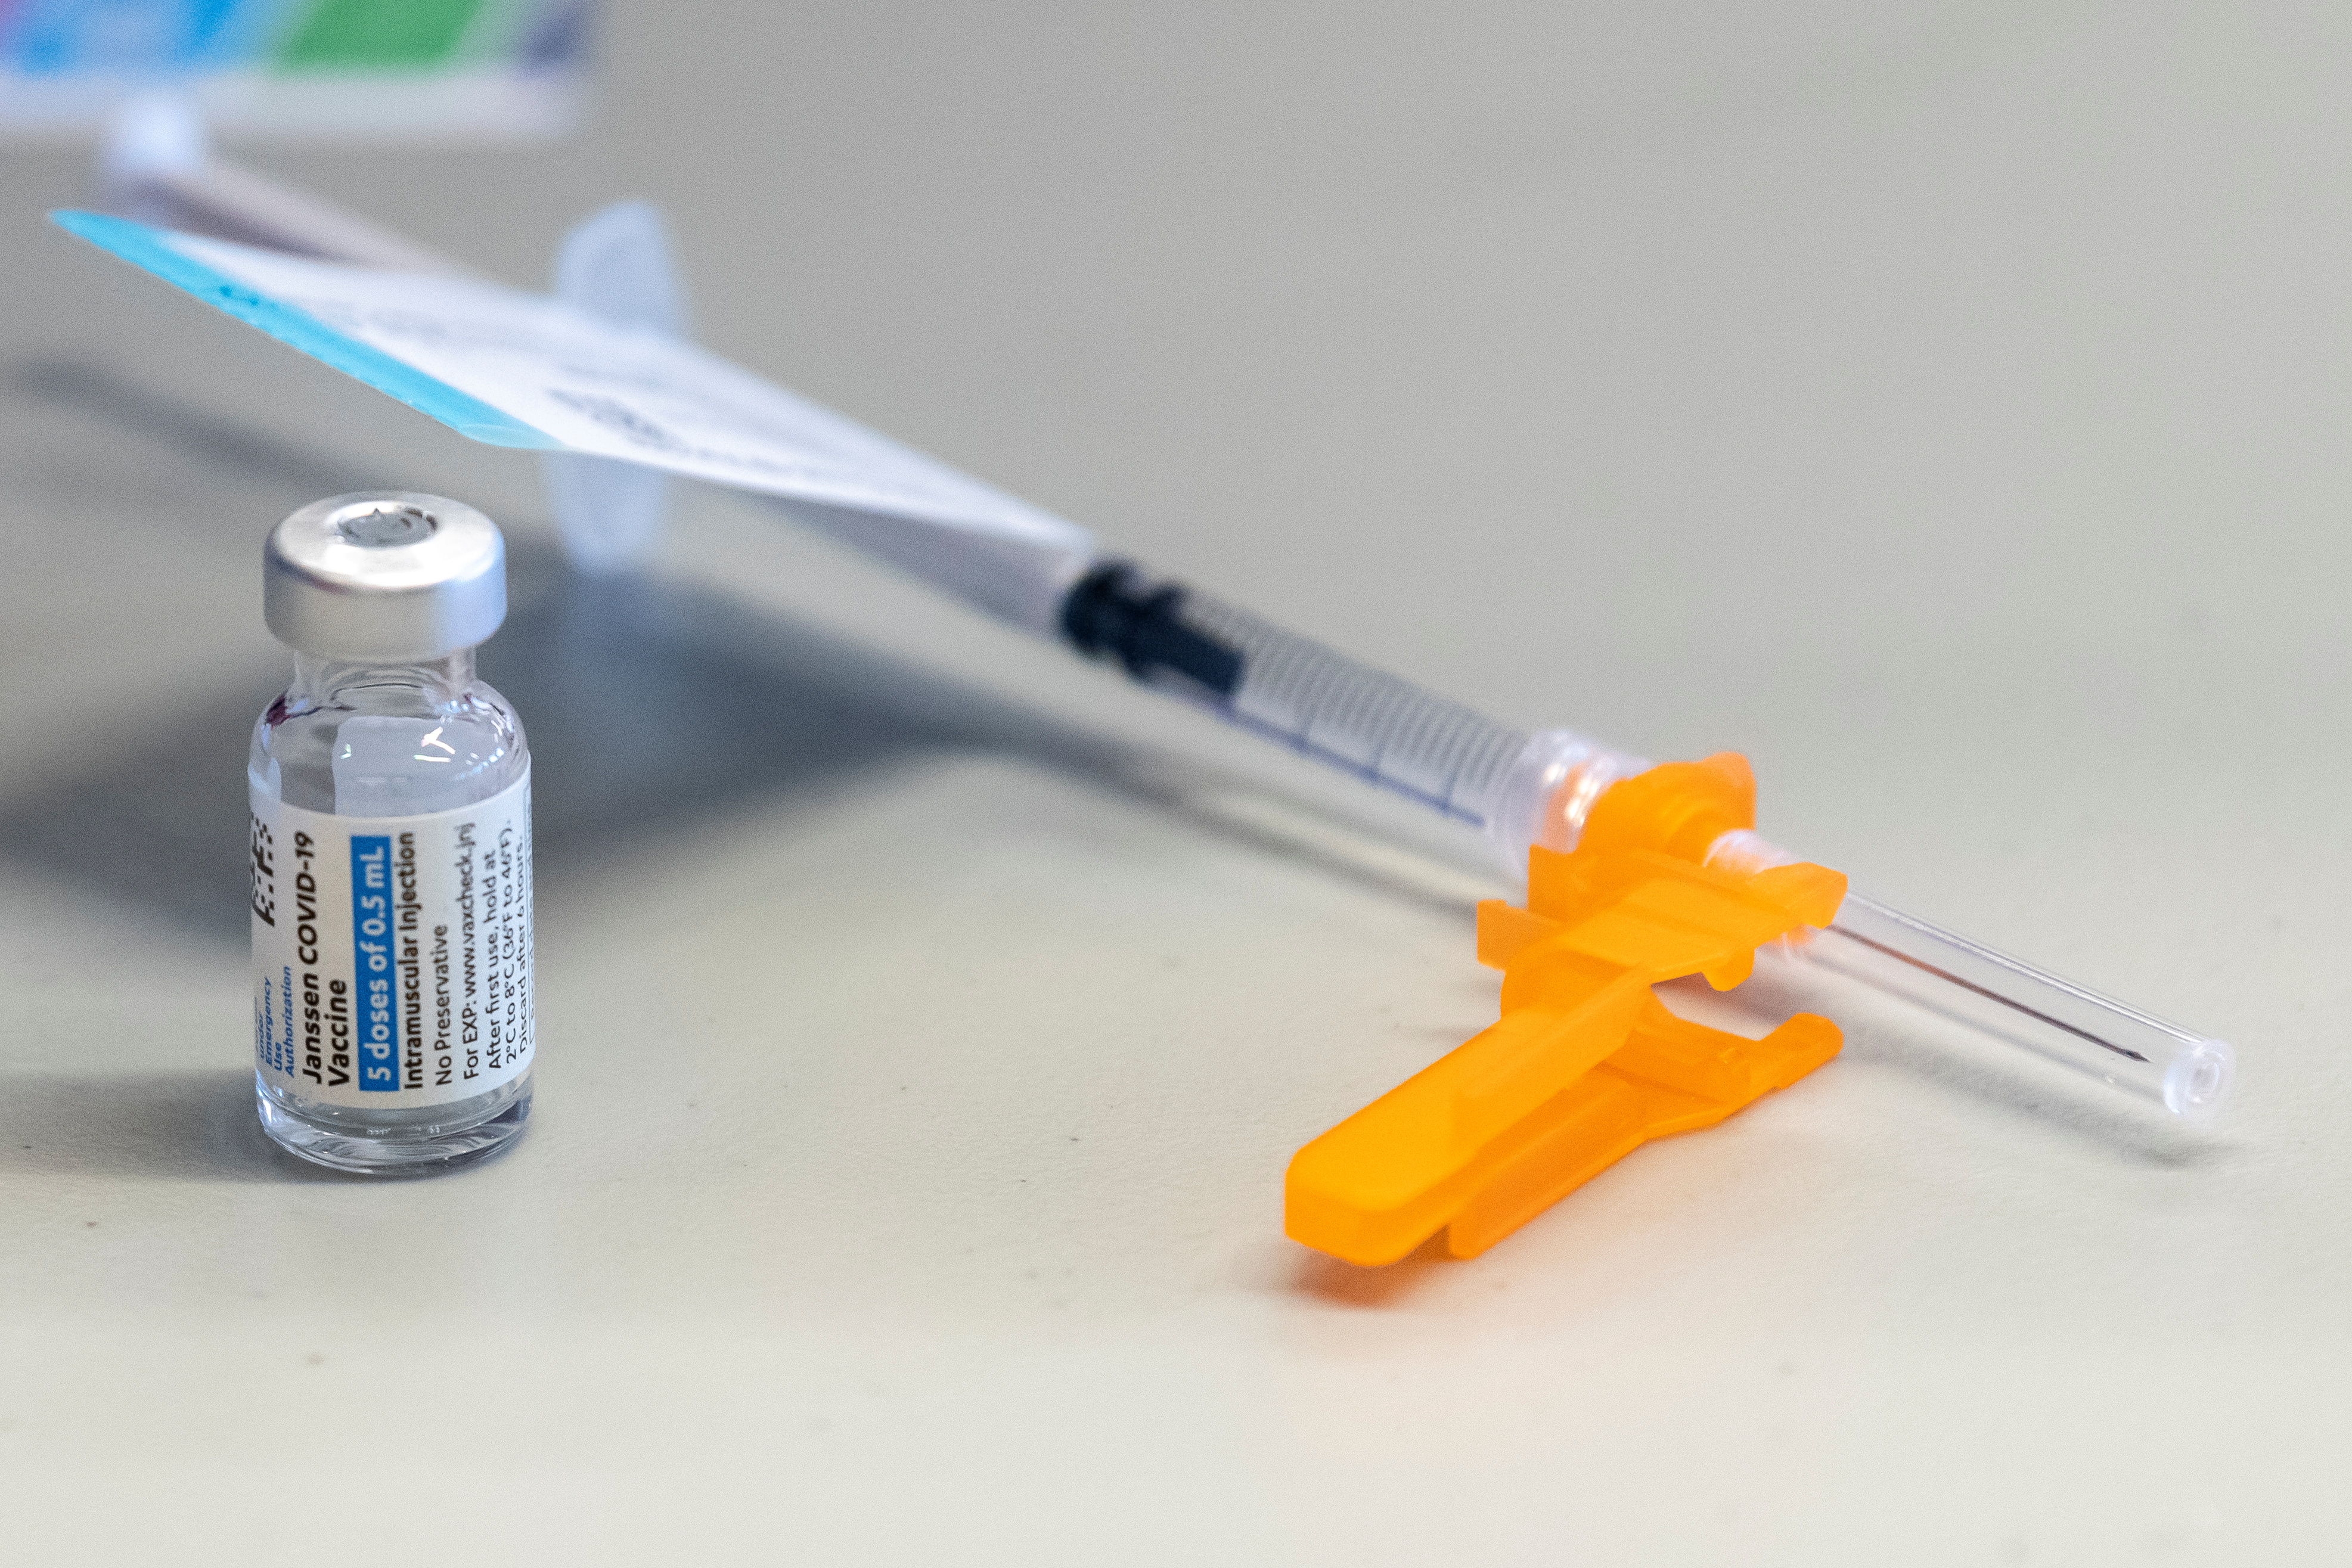 Johnson & Johnson coronavirus vaccine is seen in Columbus